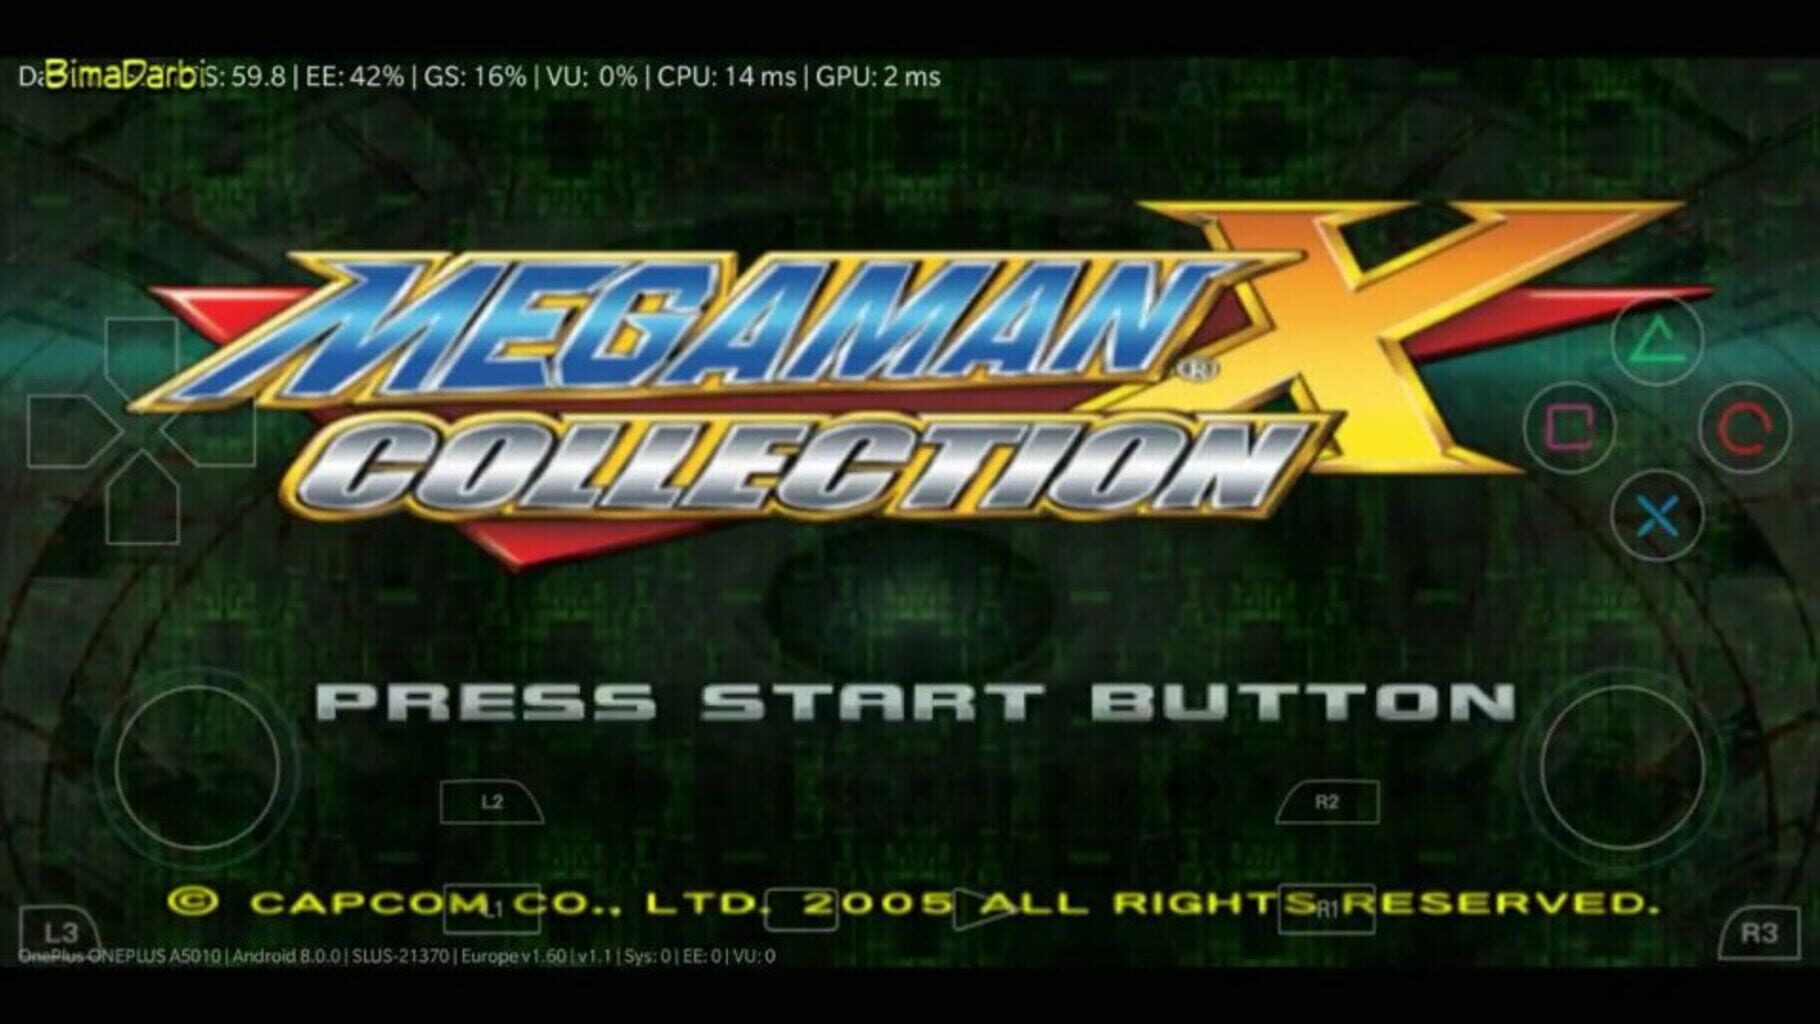 Captura de pantalla - Mega Man X Collection